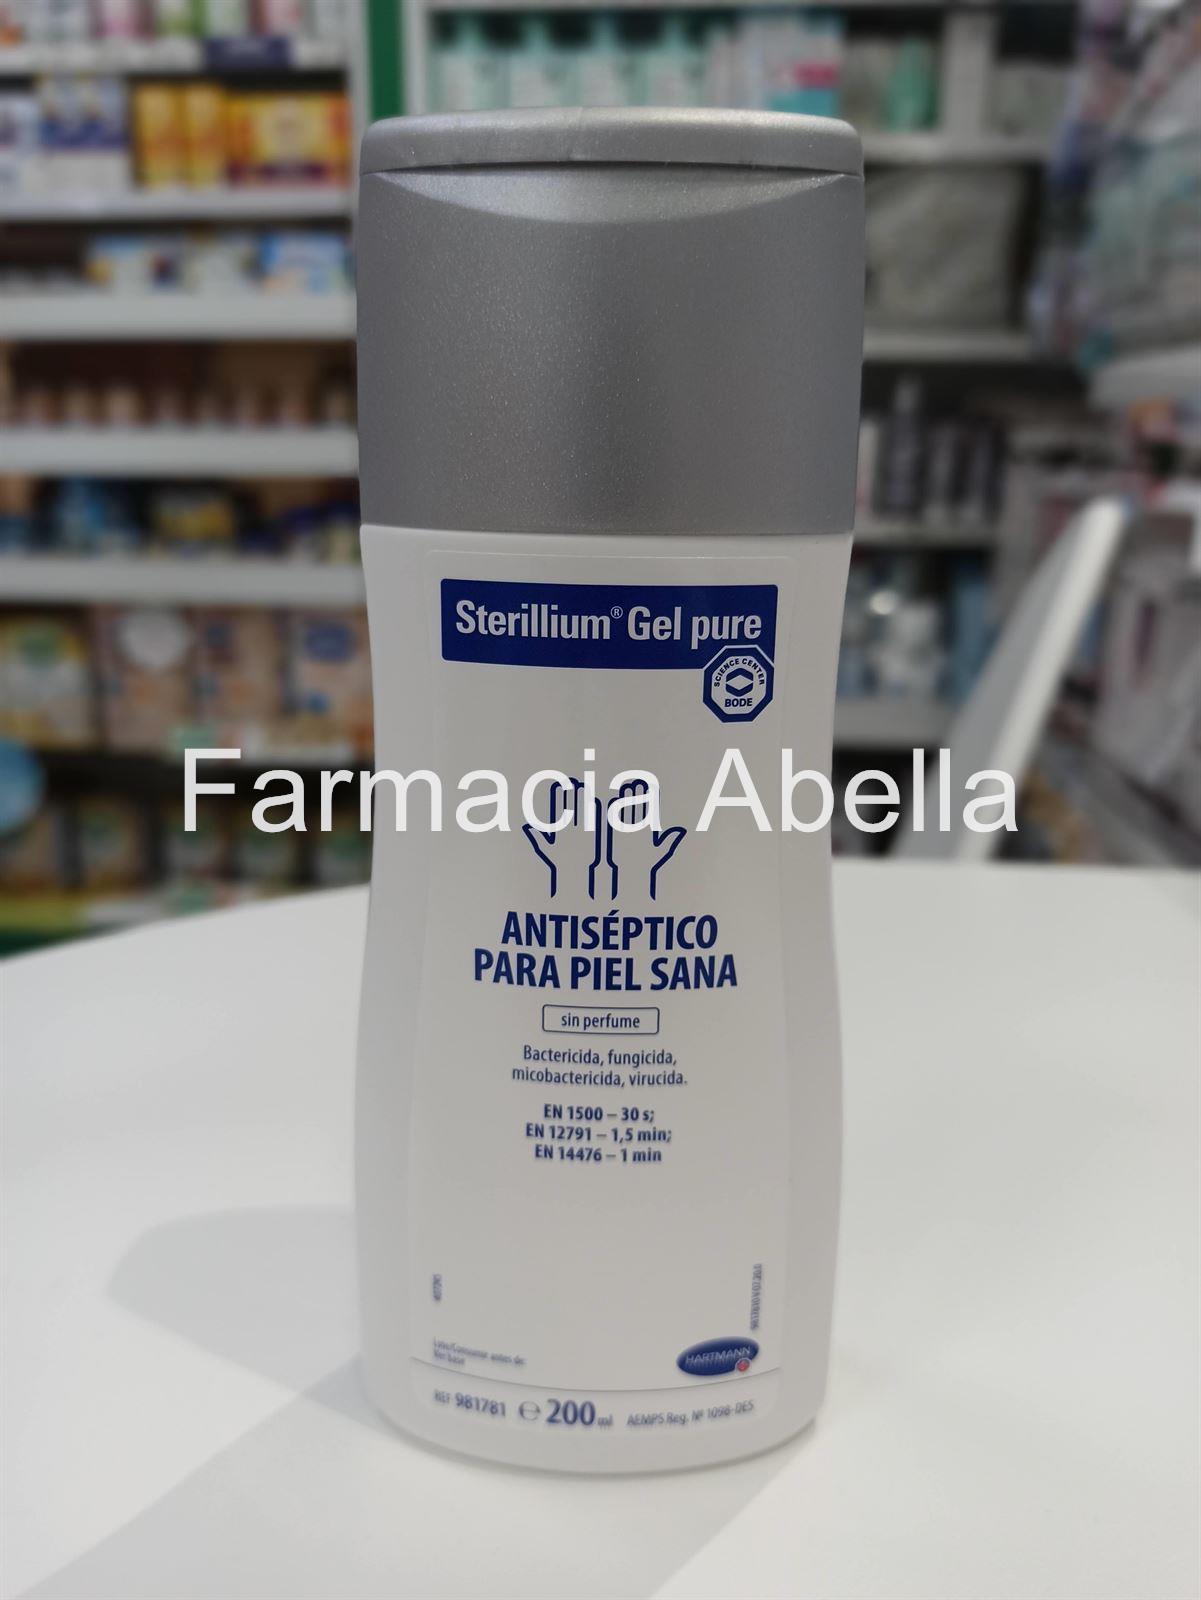 Sterillium gel puro antiséptico para piel sana 200 ml virucida bactericida - Imagen 2